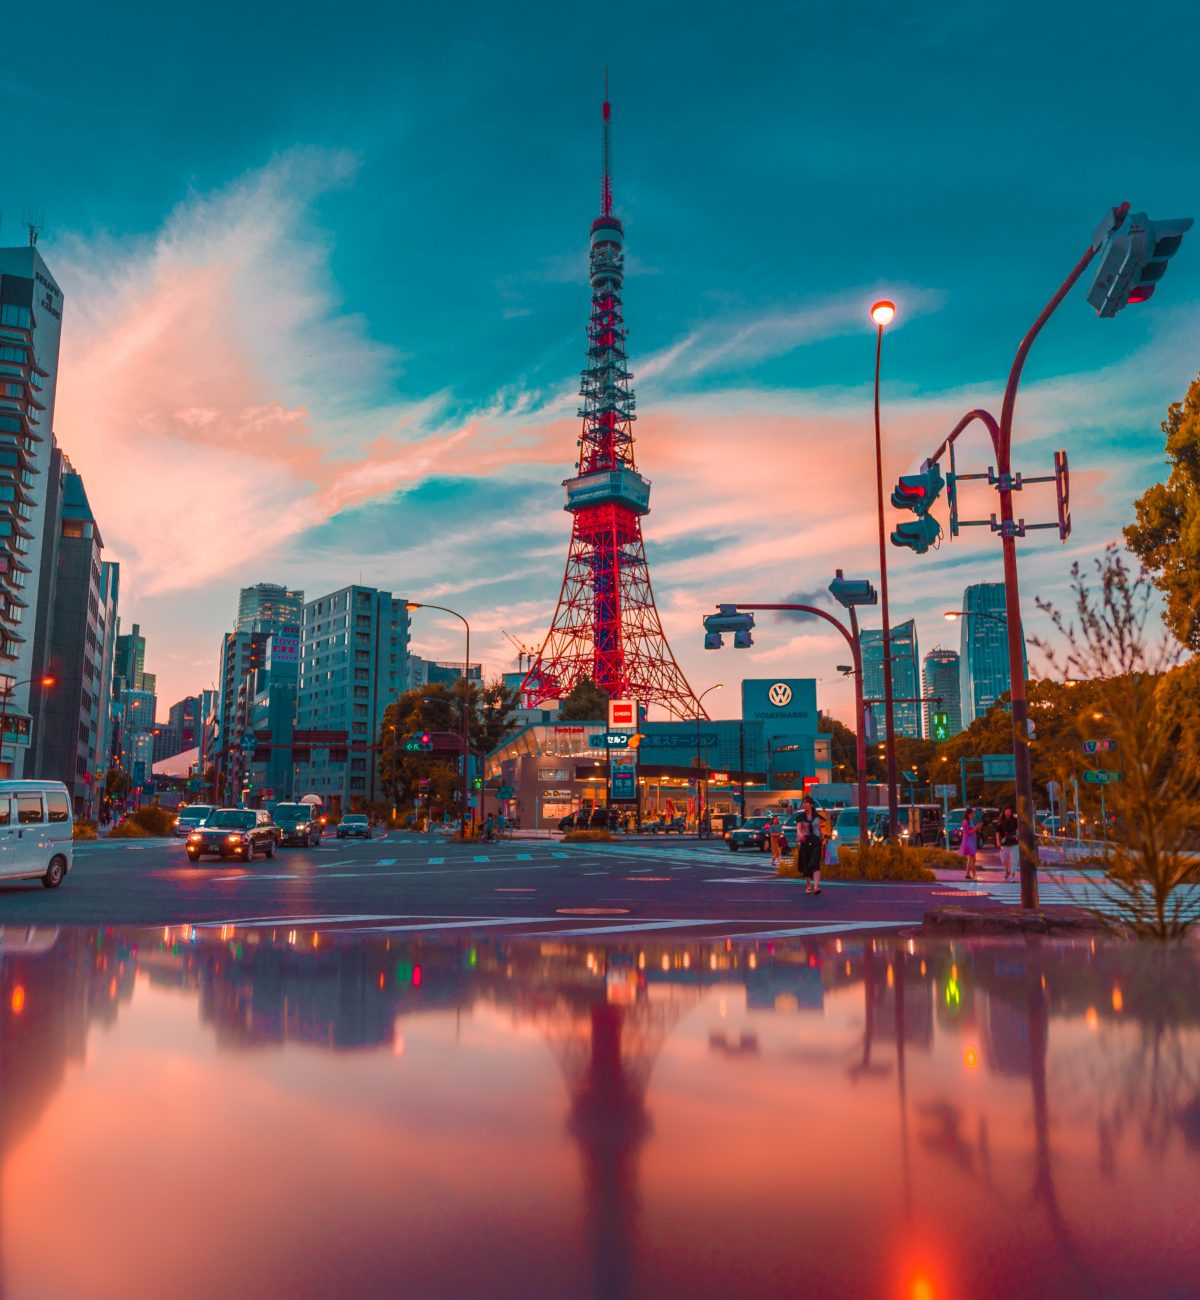 TouristSecrets | Tokyo Tower - All You Need To Know | TouristSecrets